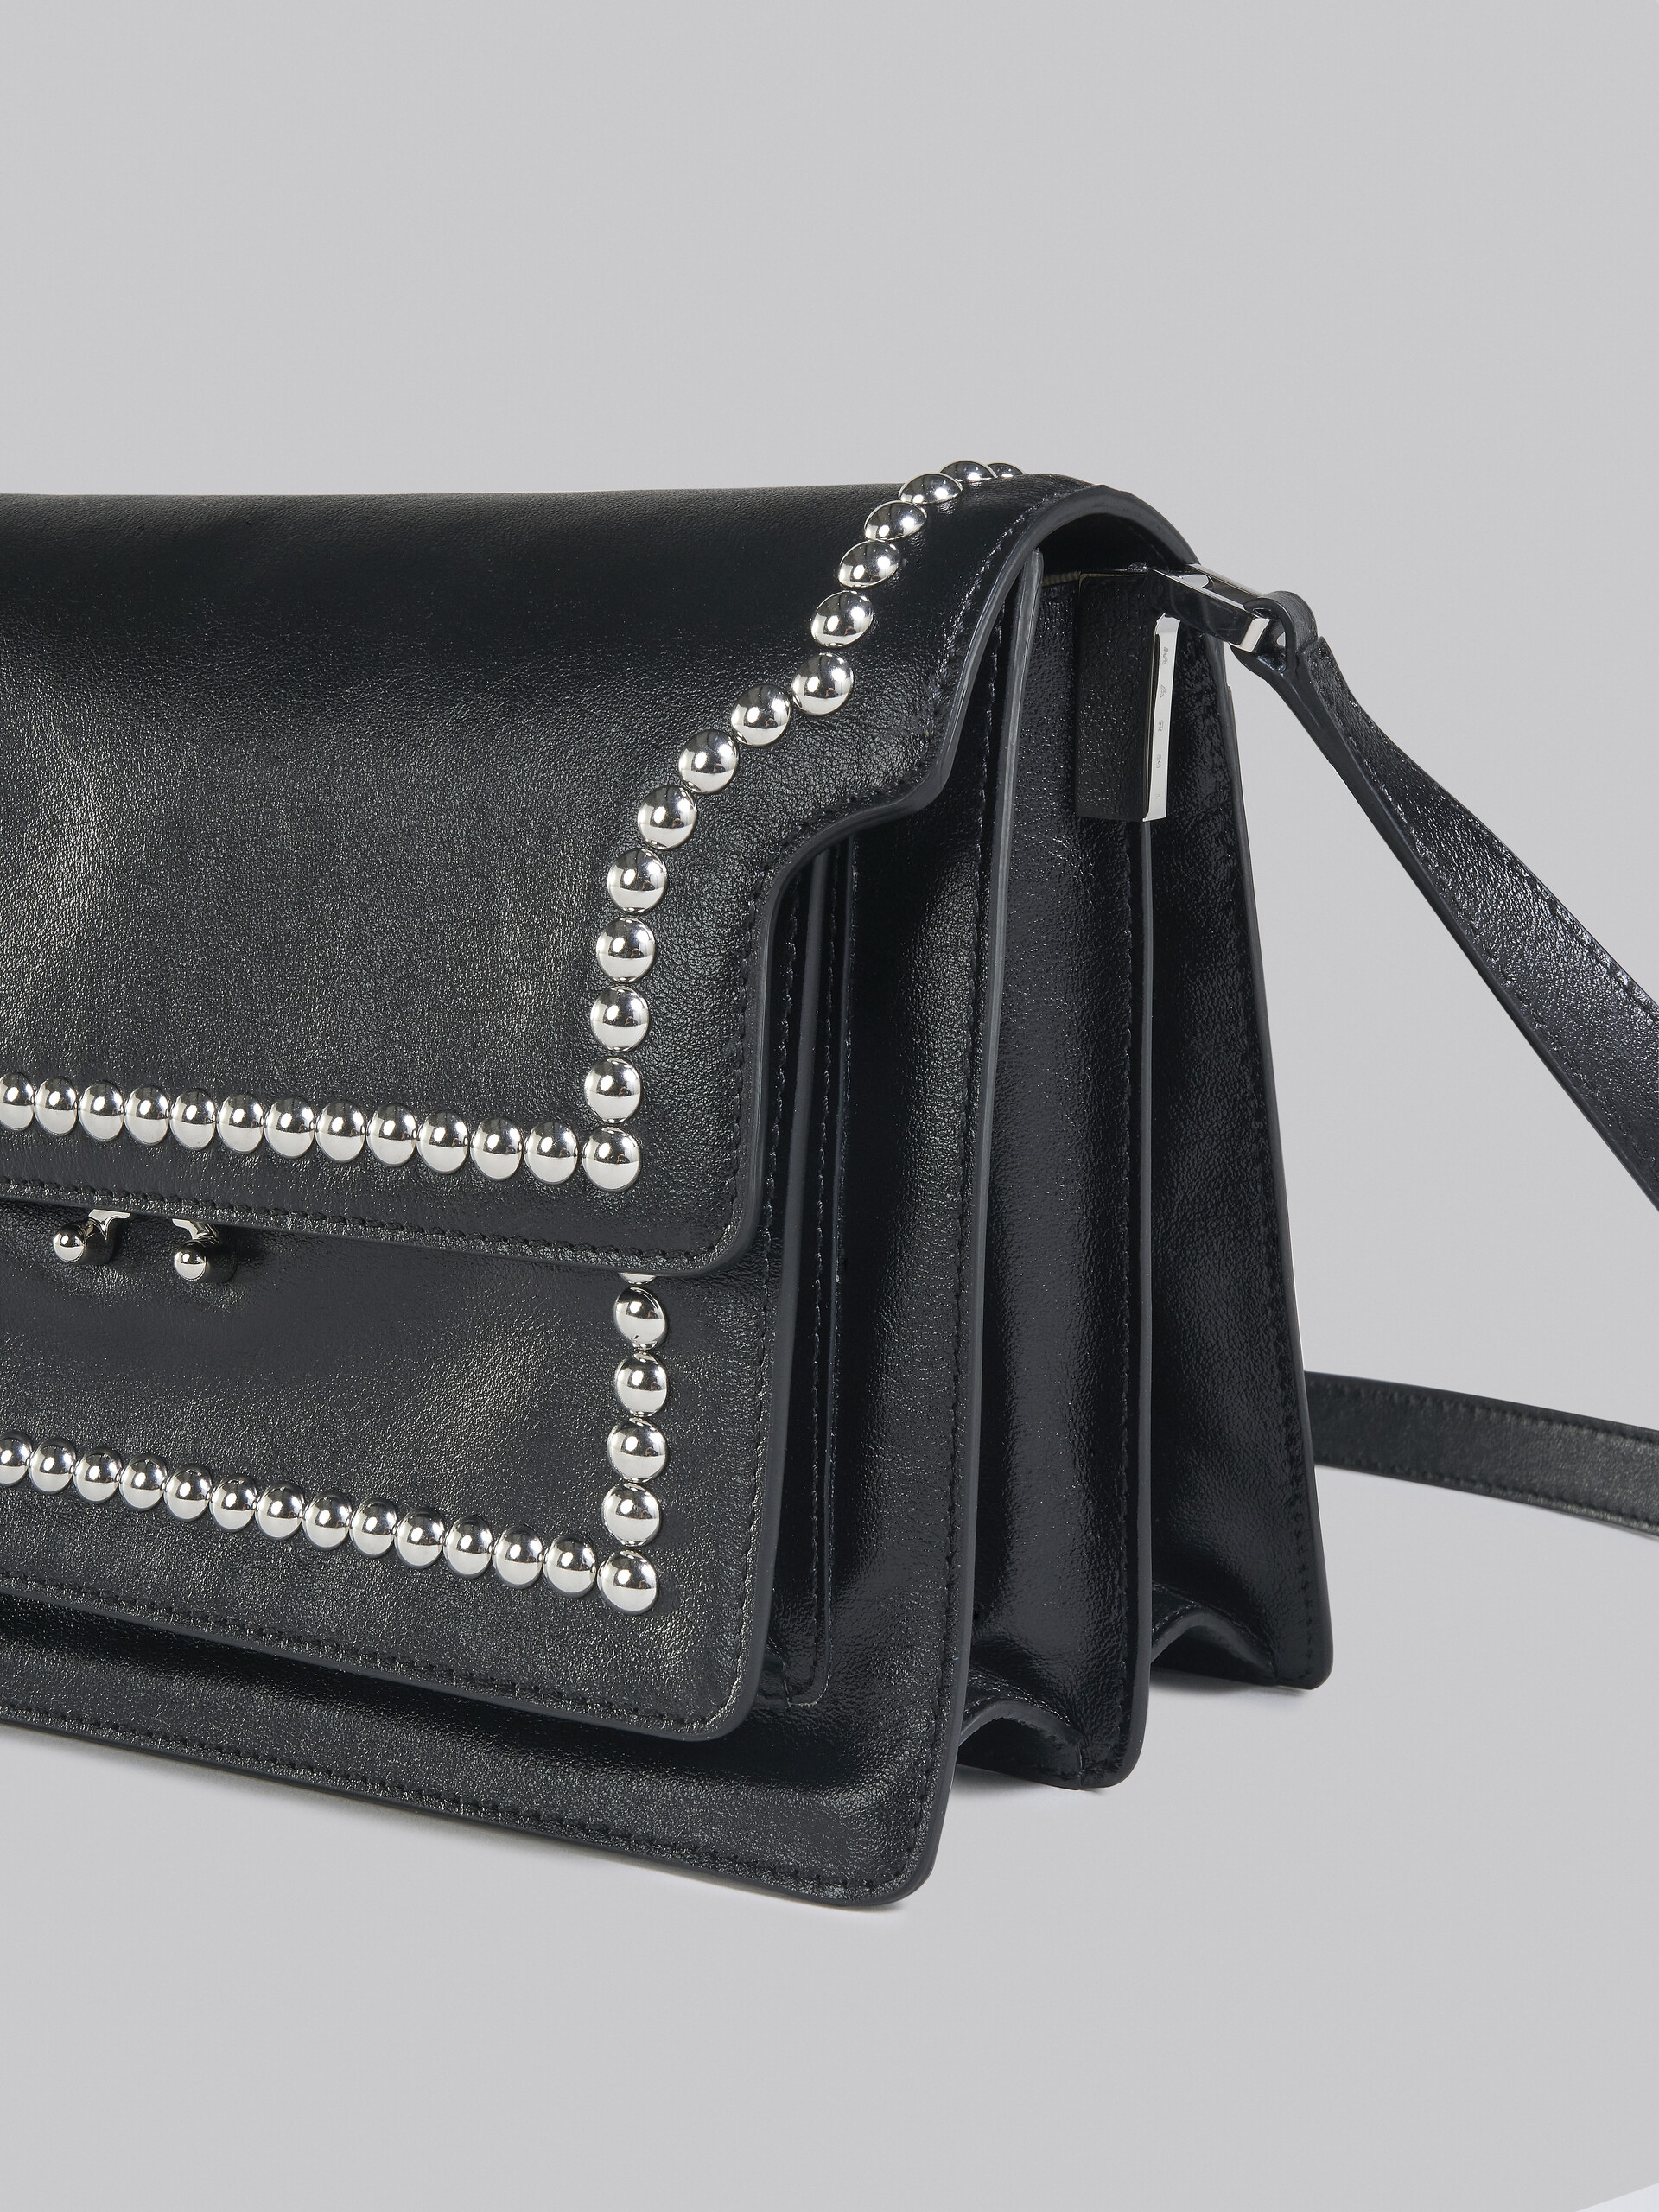 Trunk Soft Large Bag in black leather with studs - Shoulder Bag - Image 5